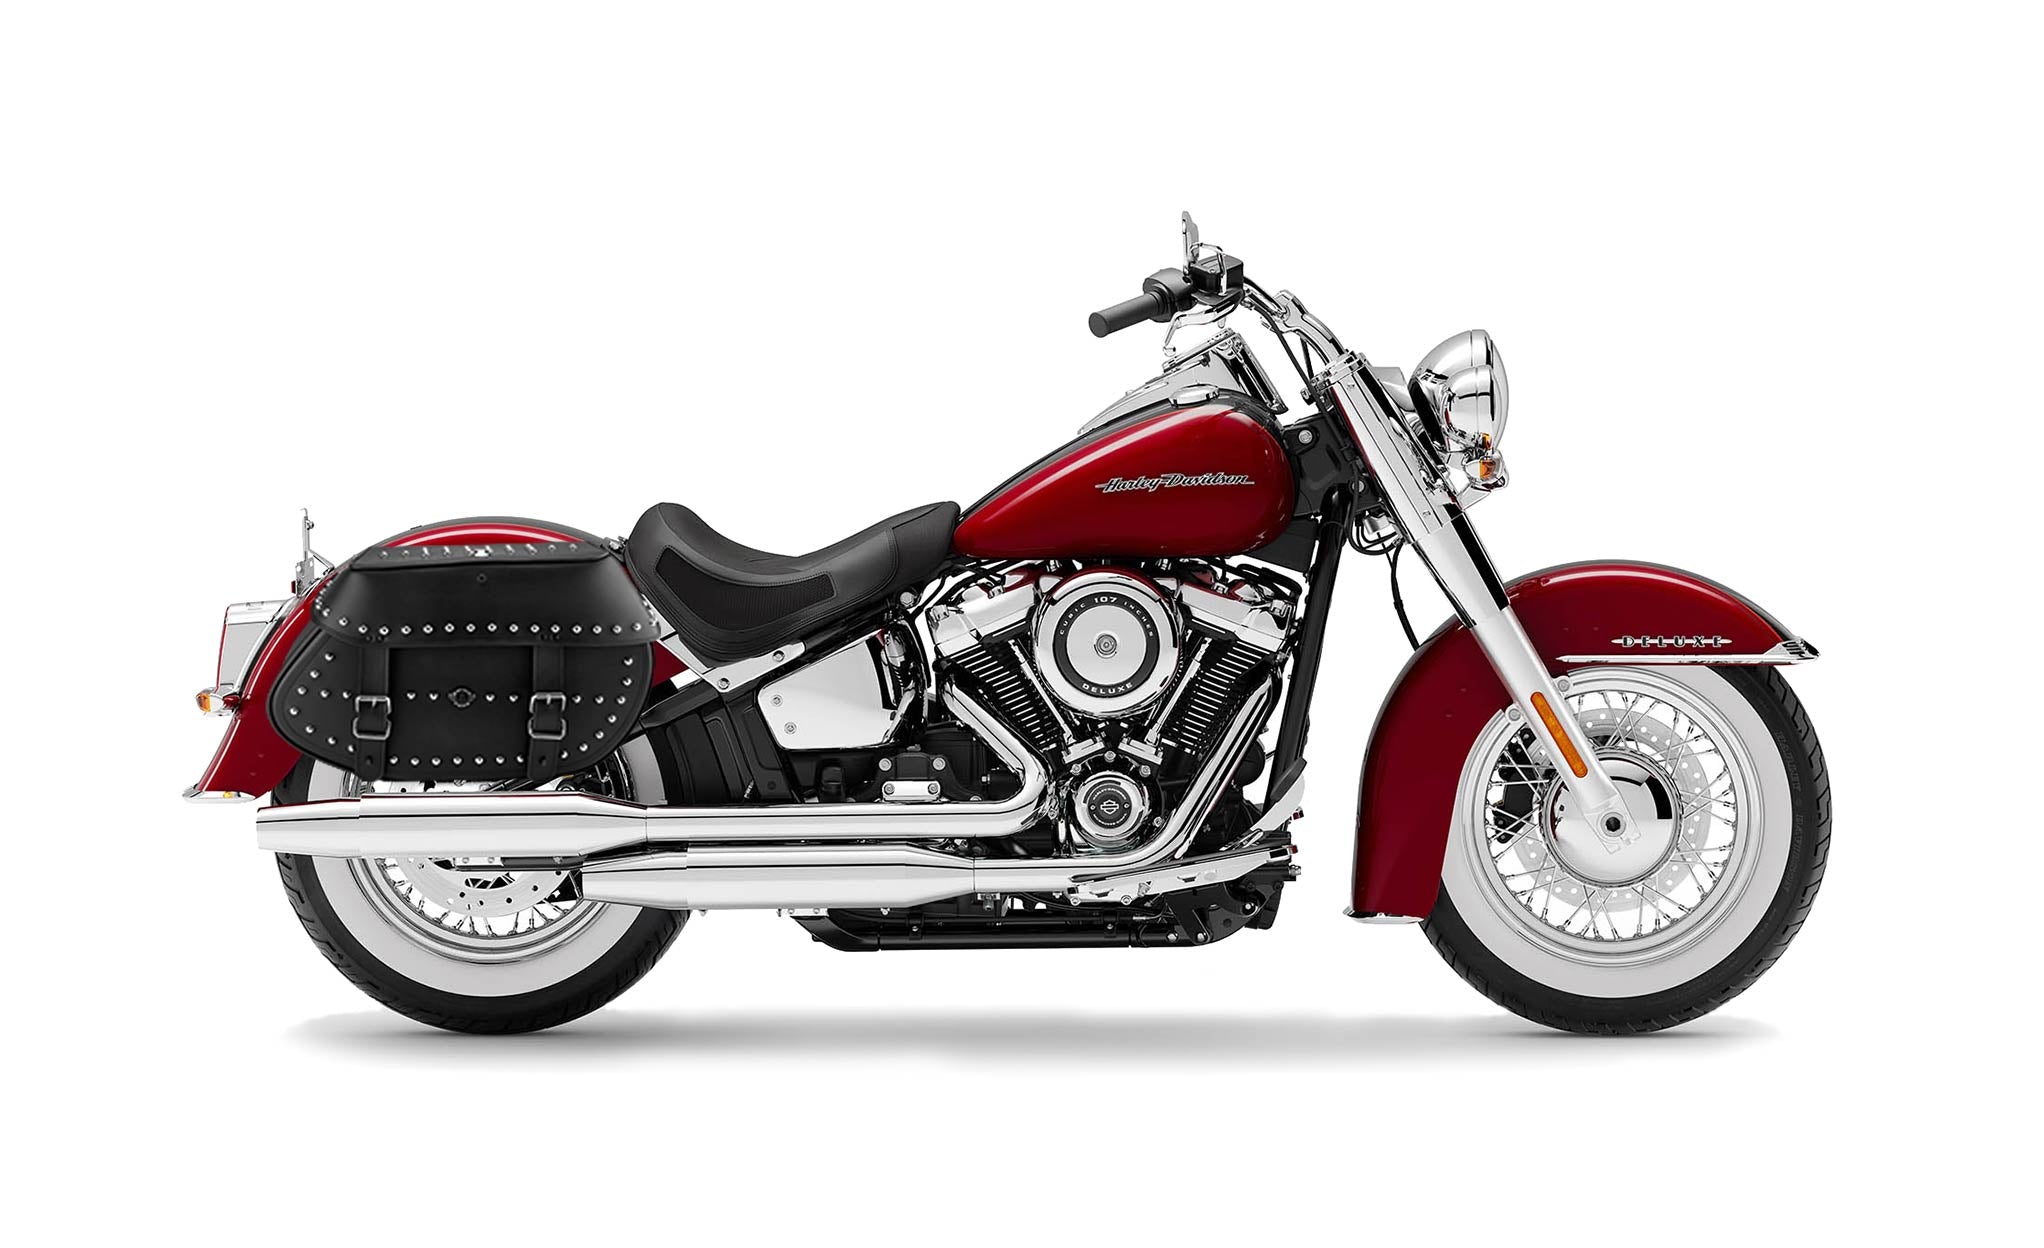 Viking Legacy Extra Large Studded Leather Motorcycle Saddlebags For Harley Softail Deluxe Flstn I on Bike Photo @expand